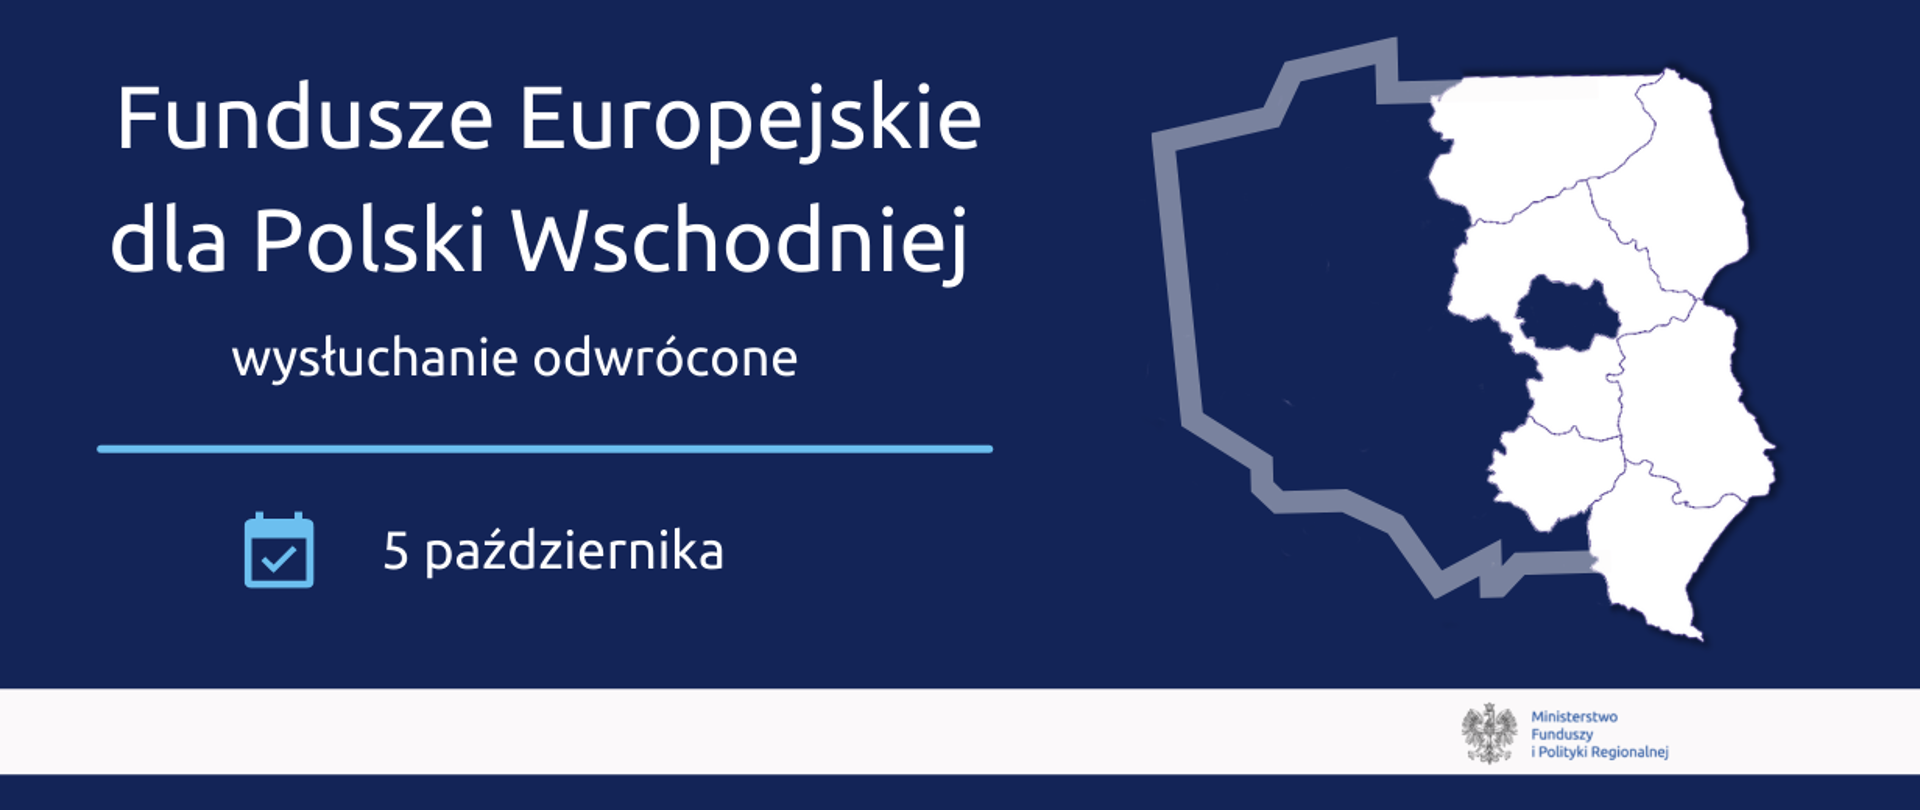 Po prawej kontury Polski z zaznaczonymi województwami Polski Wschodniej i napis: Fundusze Europejskie dla Polski Wschodniej 2021 wysłuchanie odwrócone 5 października.